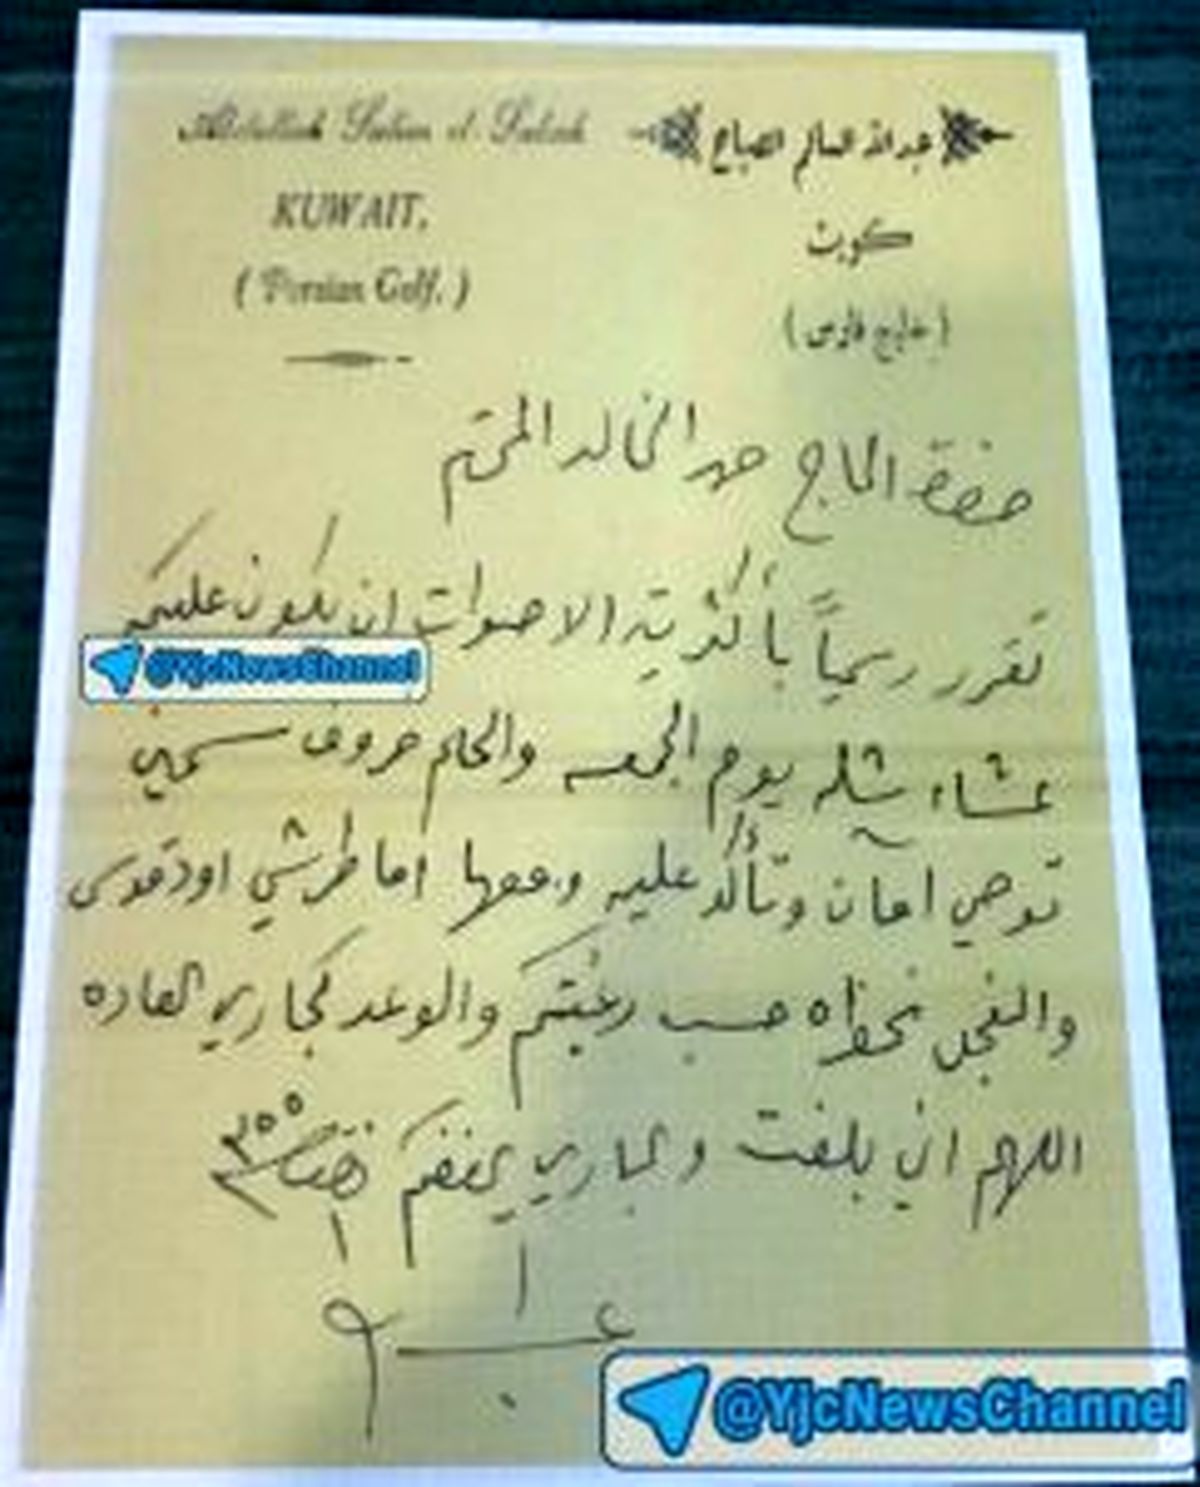 دستخطی که نام خلیج فارس را تایید می کند